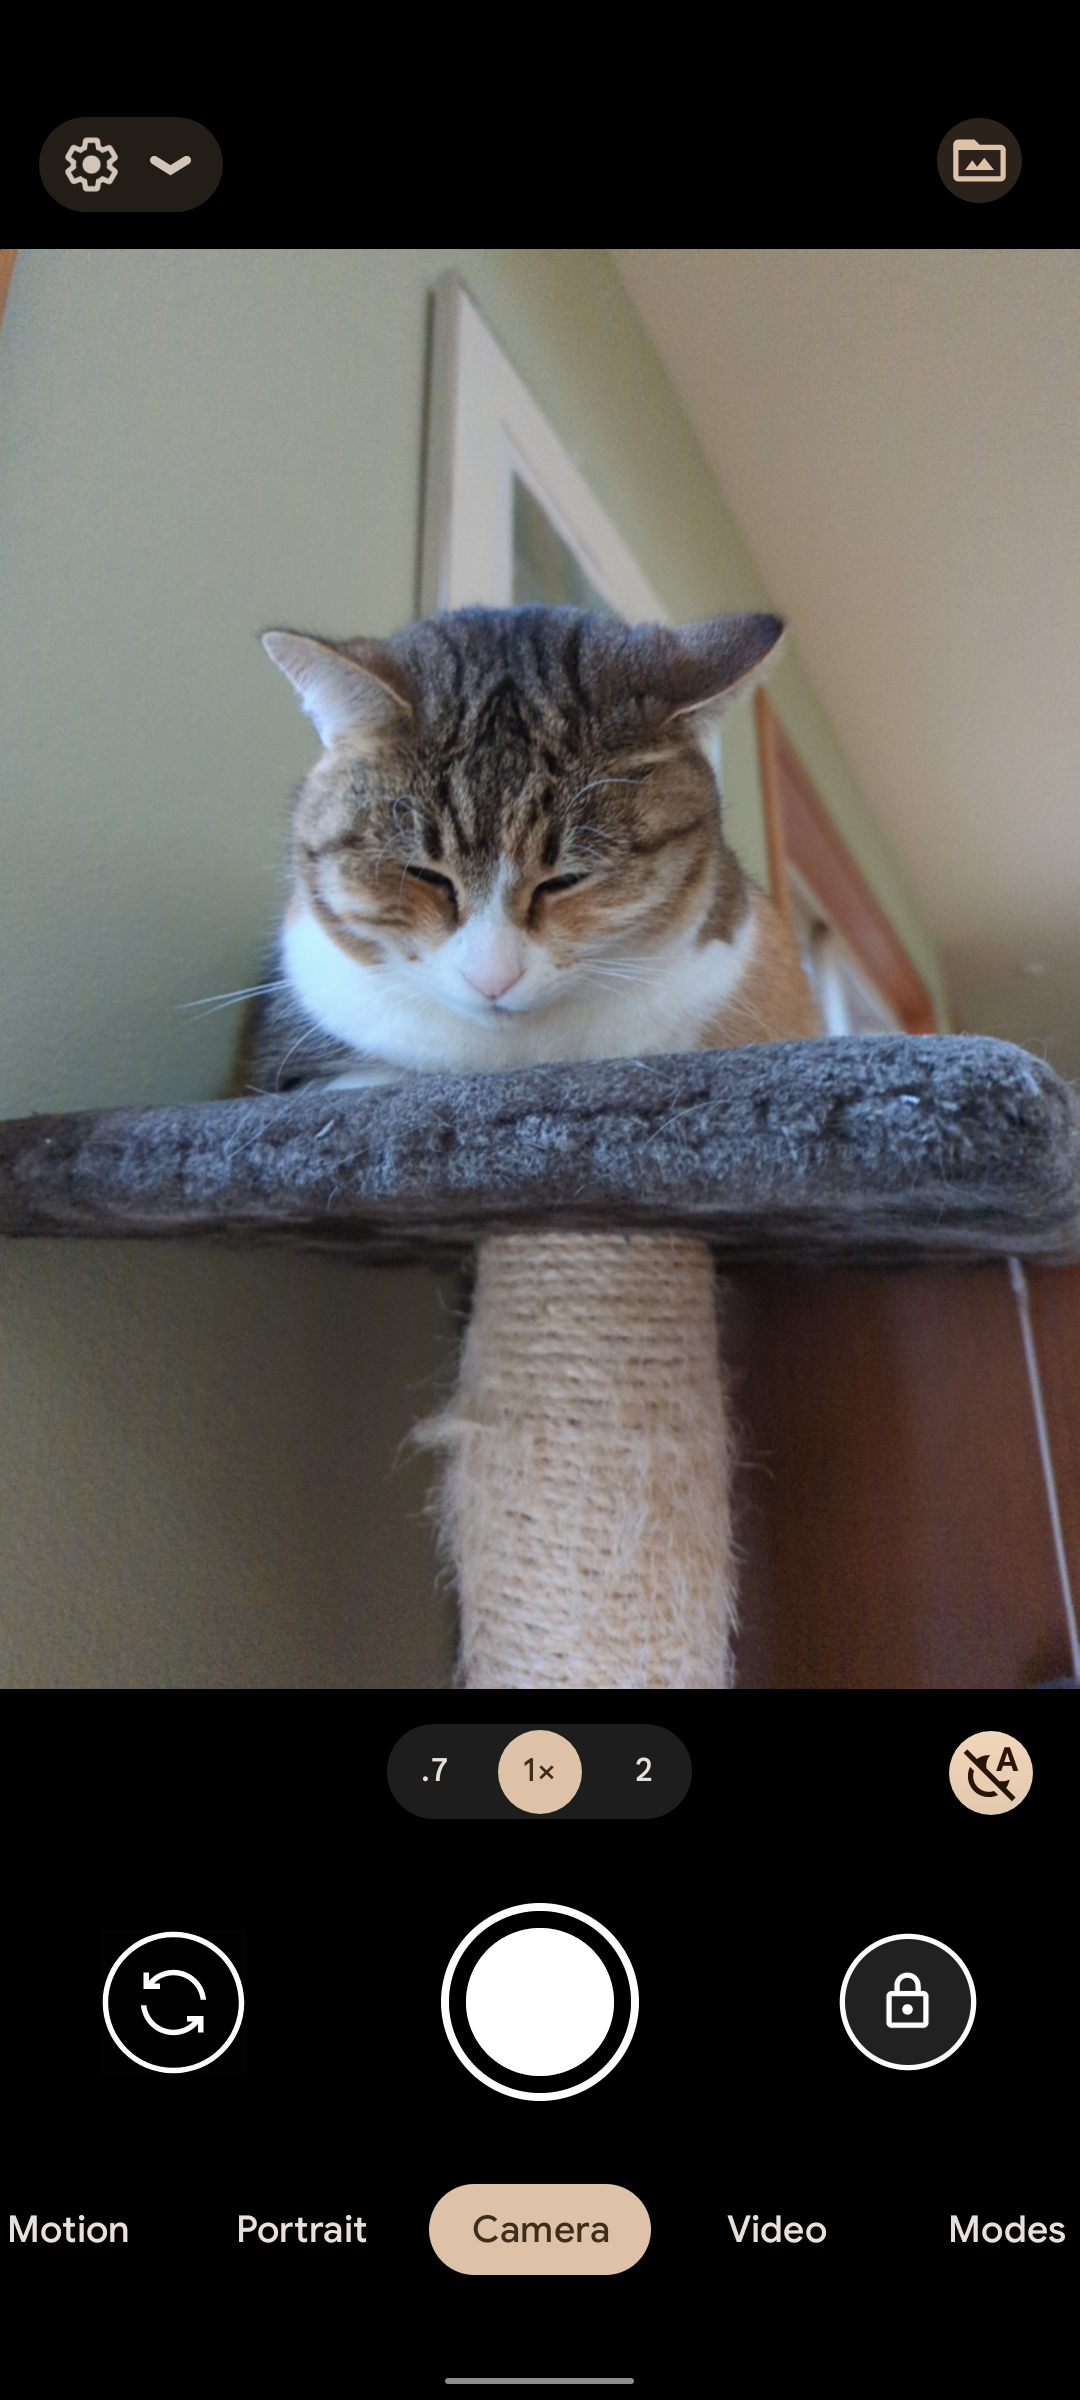 Captura de tela do aplicativo de câmera do smartphone Google Pixel com a imagem de um gato